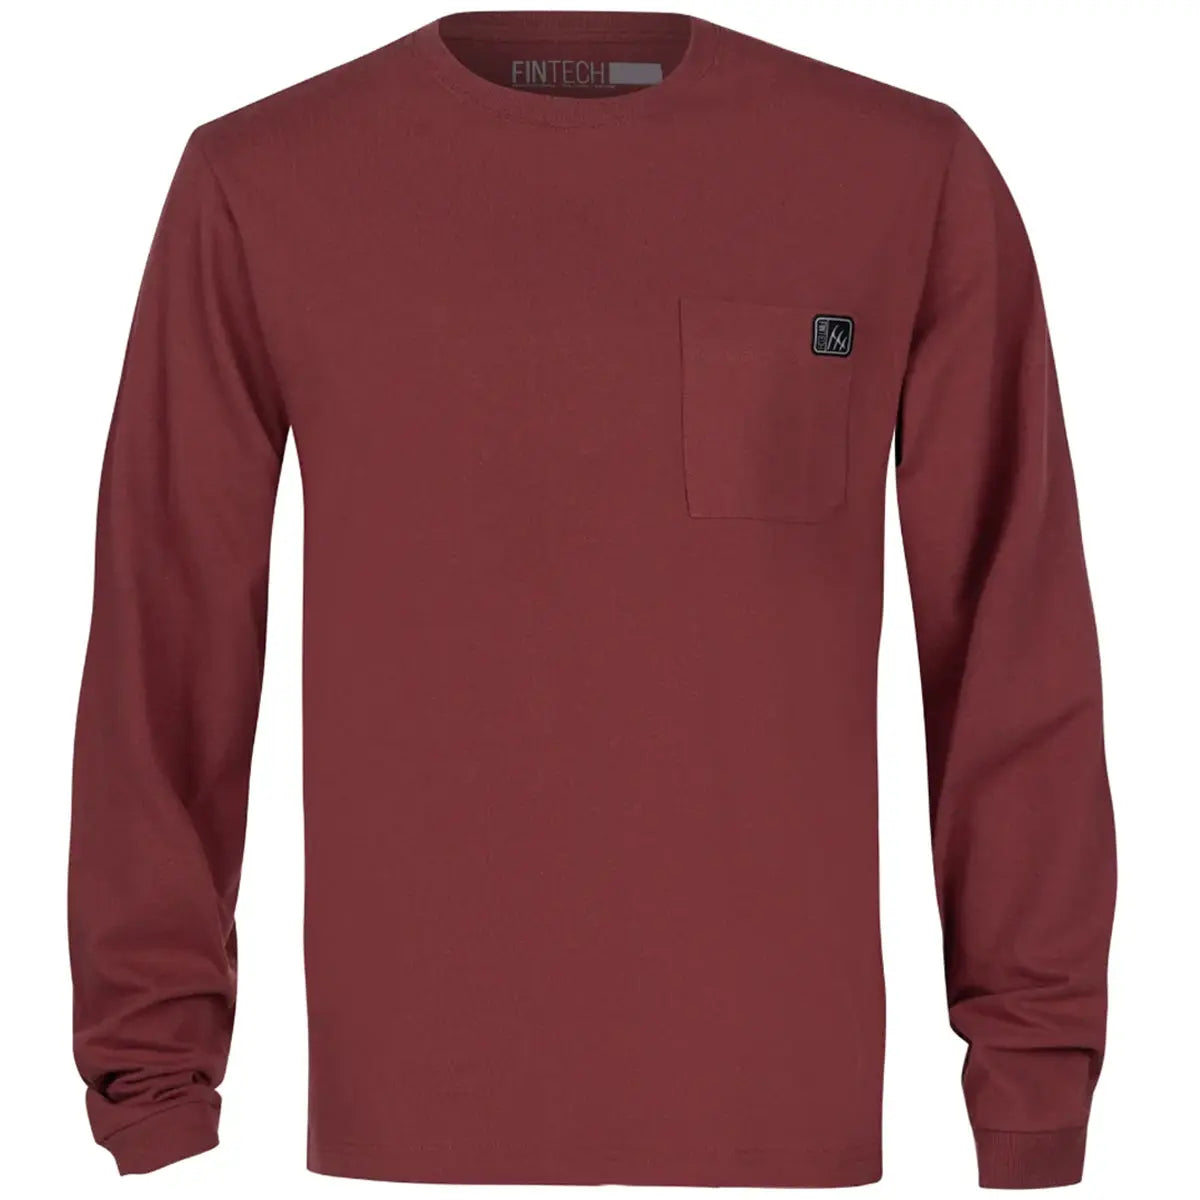 Fintech Heavy-Duty Long Sleeve Graphic T-Shirt - Oxblood Red Fintech